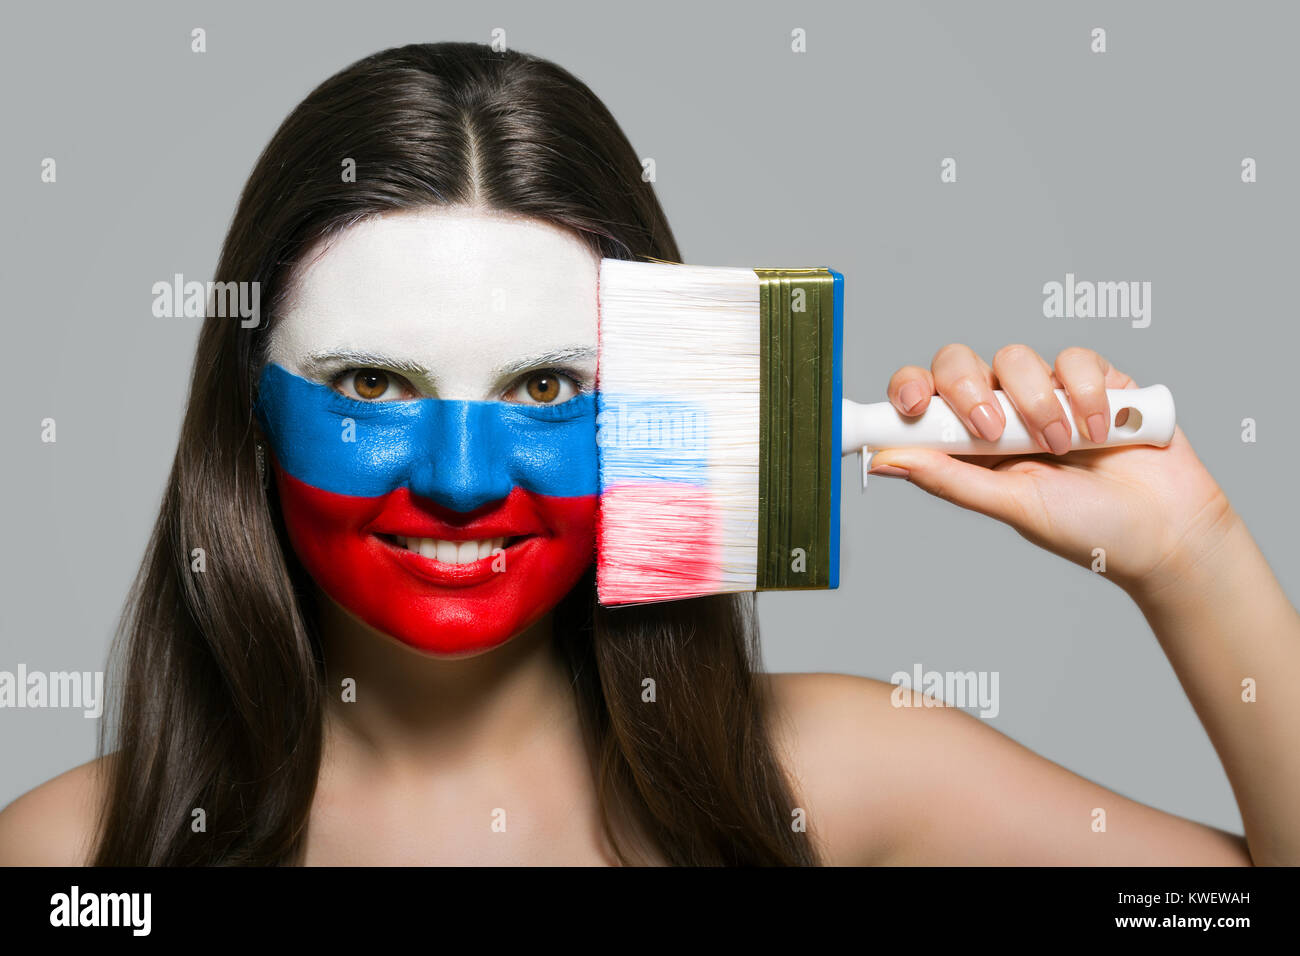 Le visage d'une femme dans les couleurs nationales de la Russie Banque D'Images